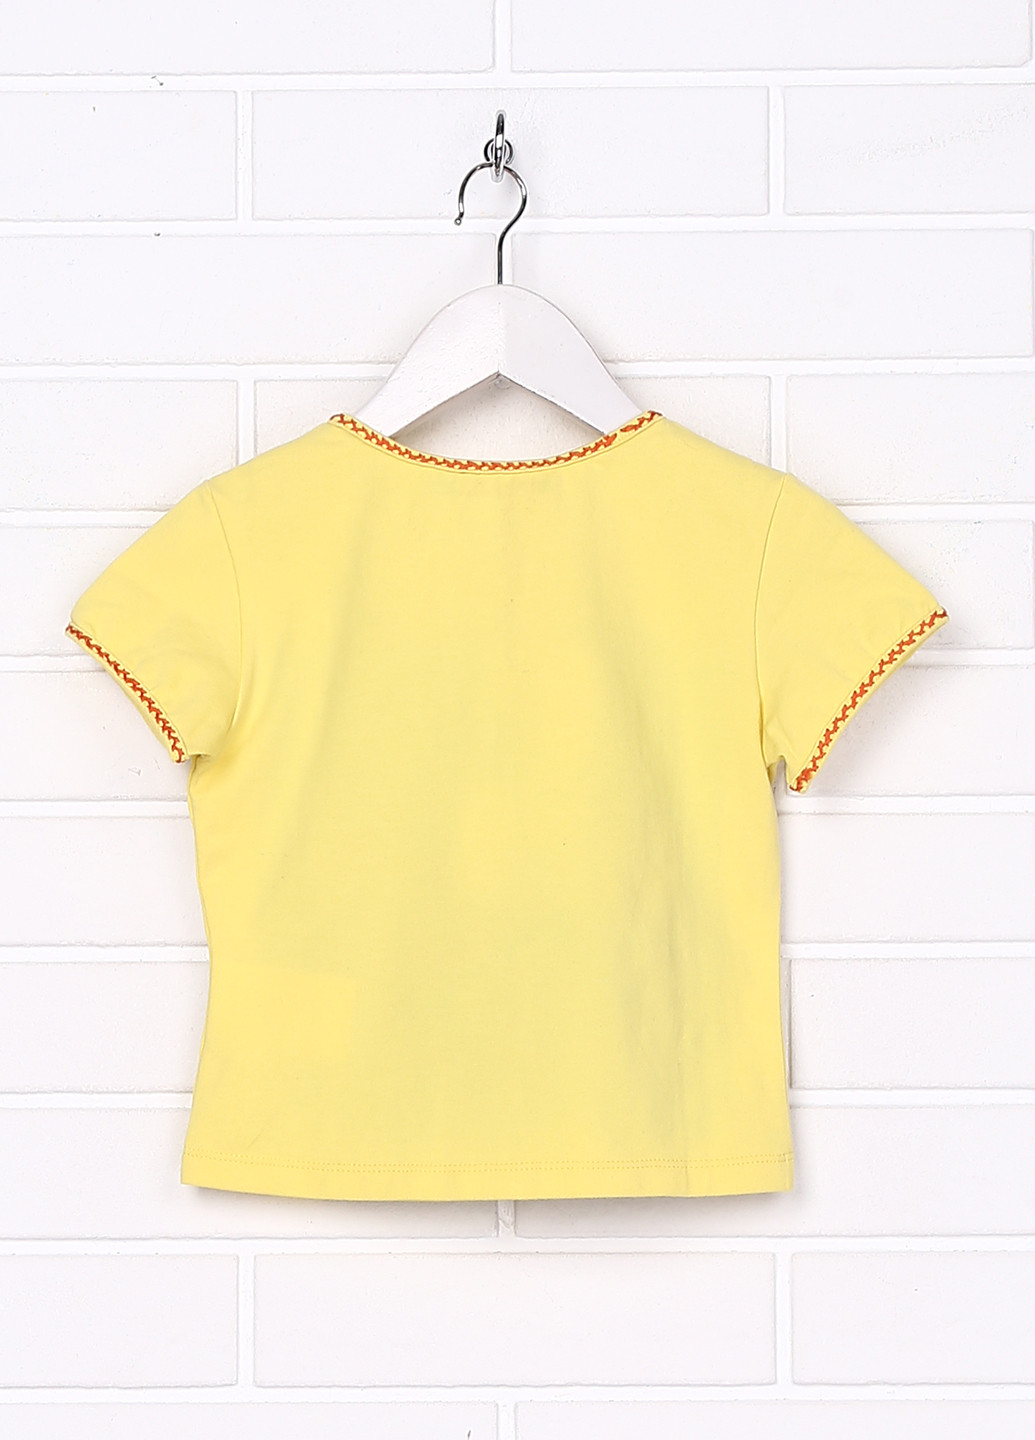 Жовта літня футболка з коротким рукавом Patty Shelabarger